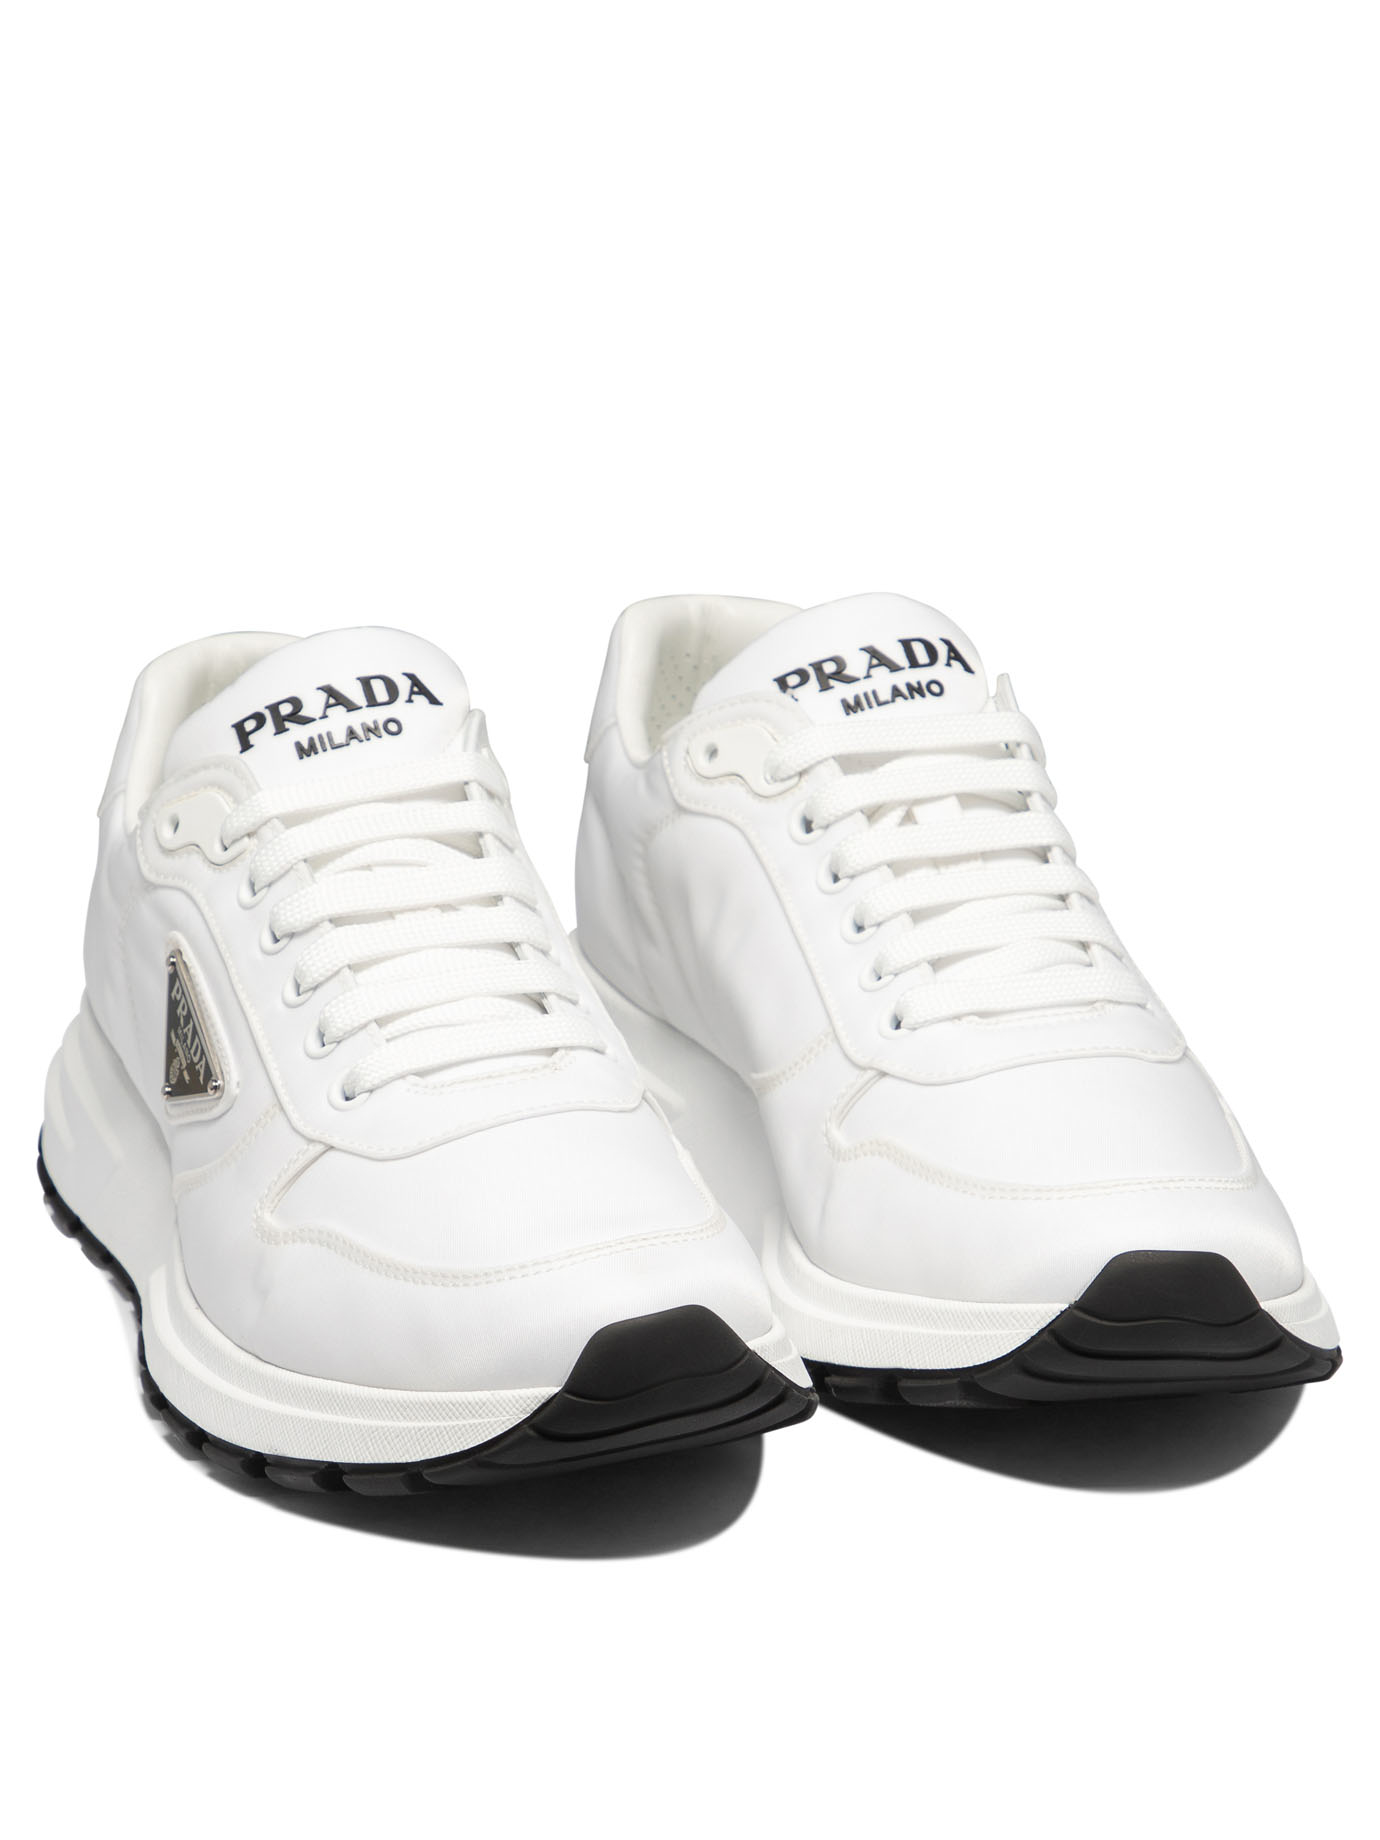 PRADA Prada PRAX 01 sneakers